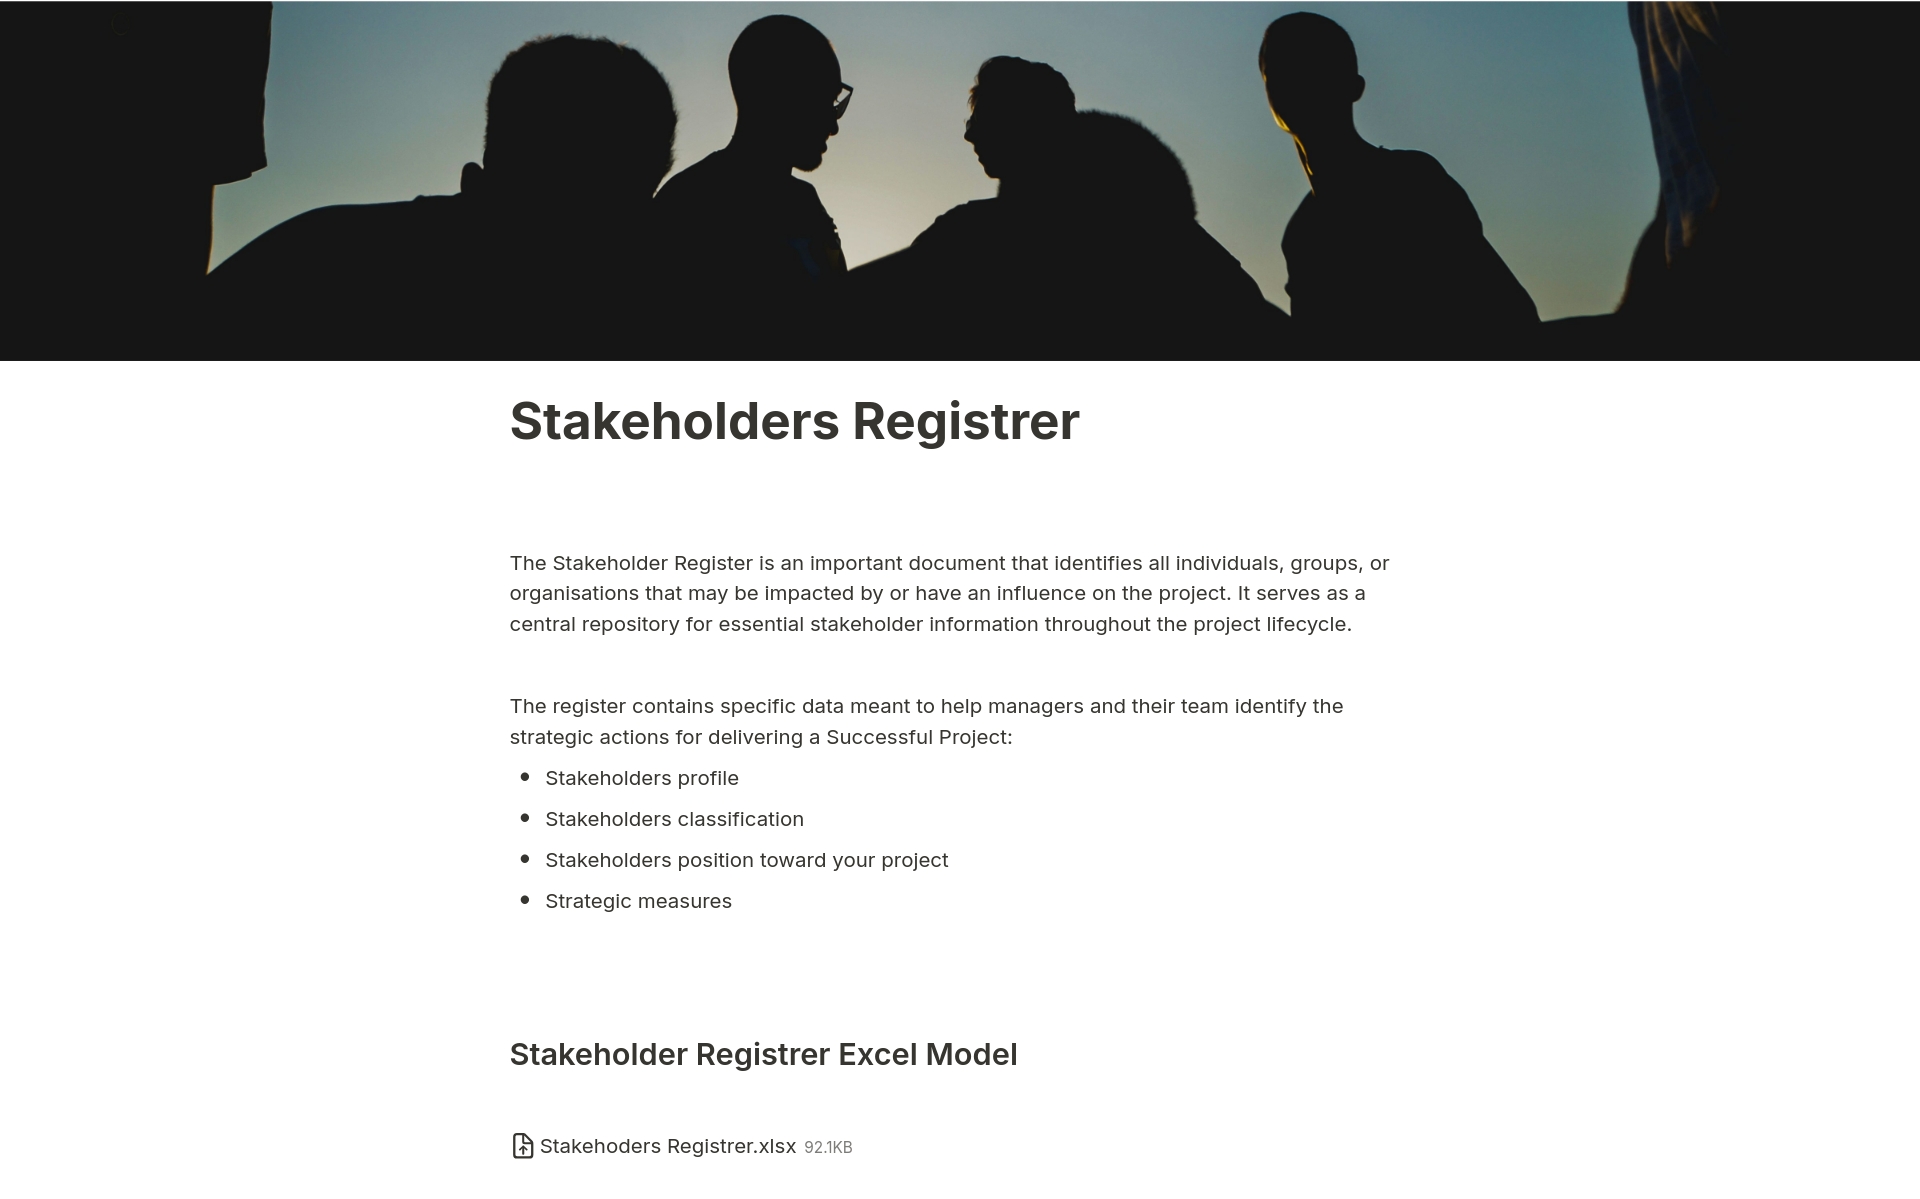 Vista previa de plantilla para Stakeholders Registrer